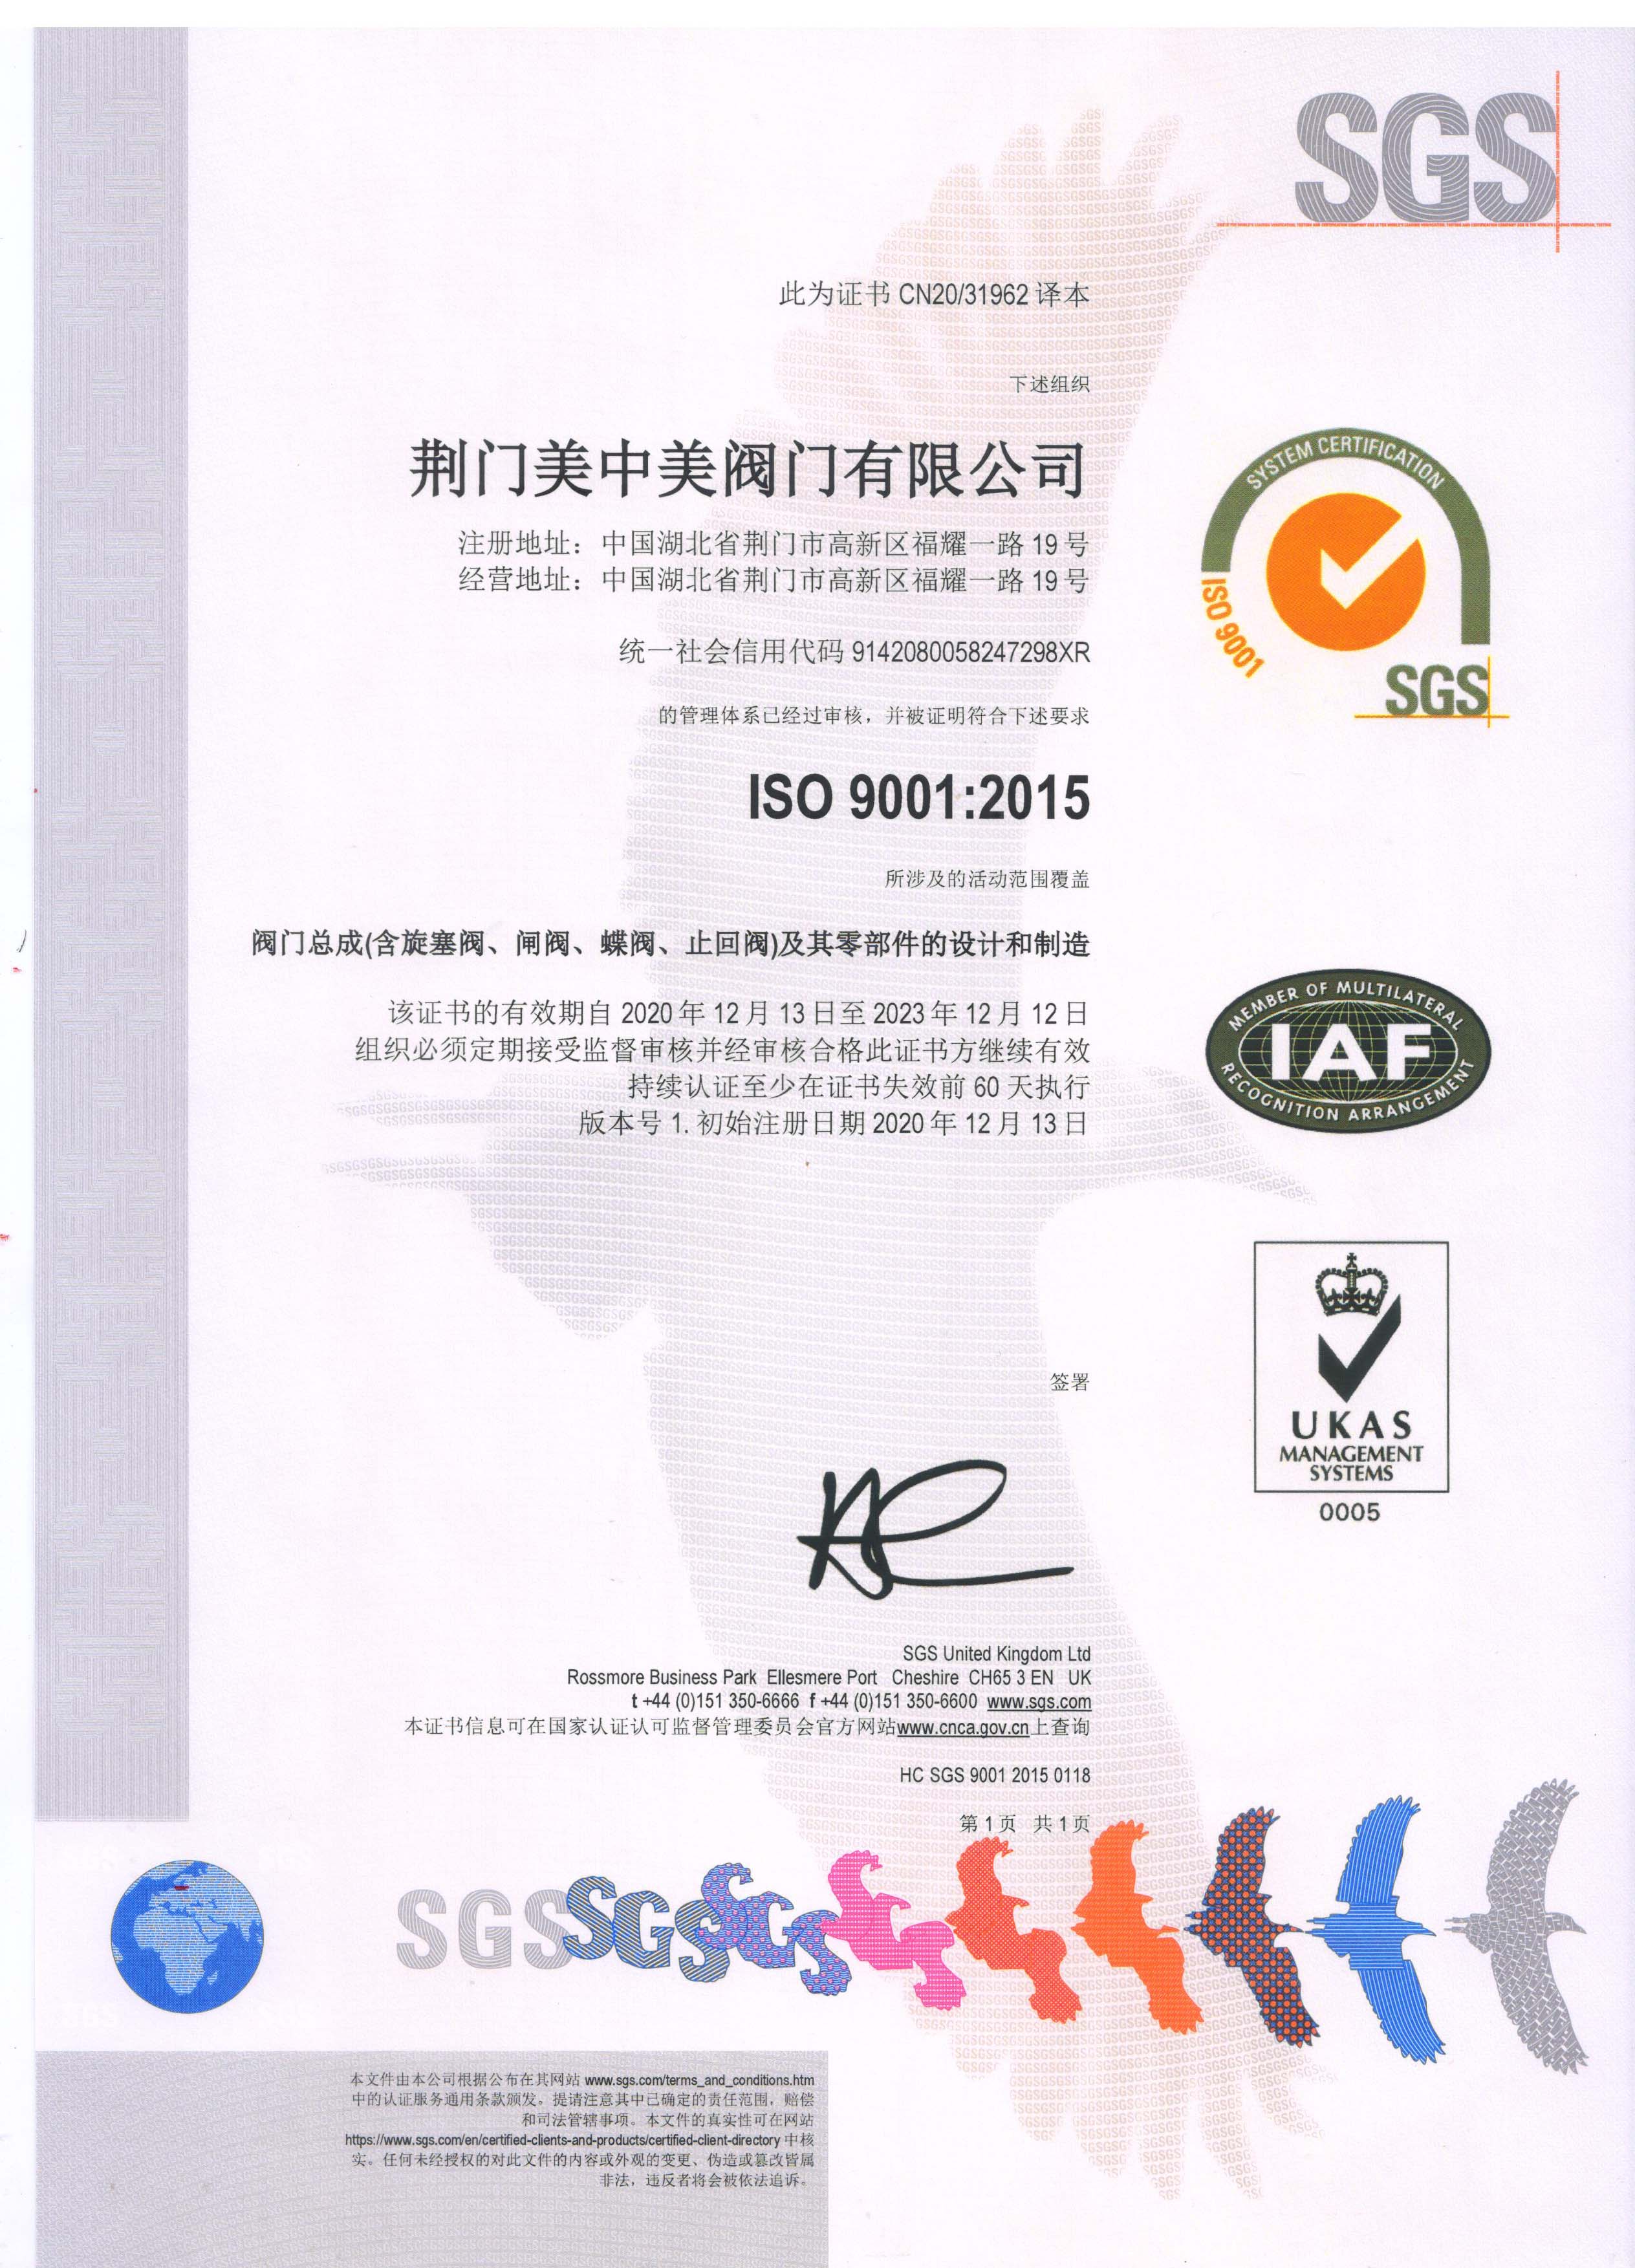 荣誉资质标题一--ISO9001:2015质量体系认证